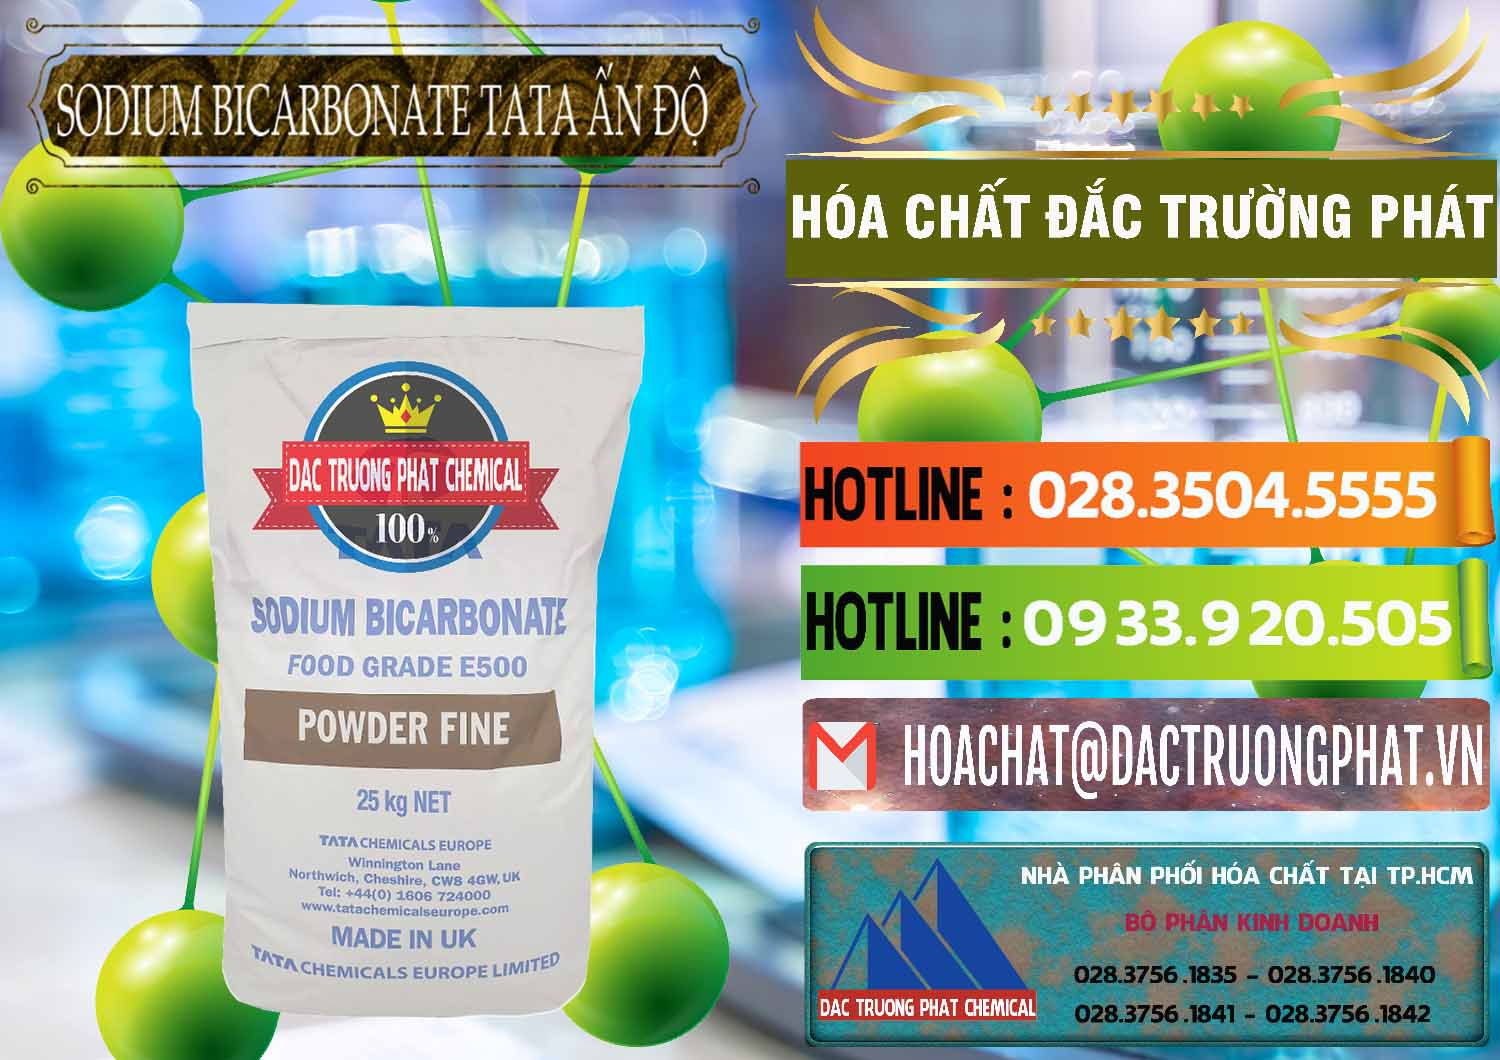 Cty chuyên cung ứng _ bán Sodium Bicarbonate – Bicar NaHCO3 E500 Thực Phẩm Food Grade Tata Ấn Độ India - 0261 - Nhà cung cấp & nhập khẩu hóa chất tại TP.HCM - cungcaphoachat.com.vn